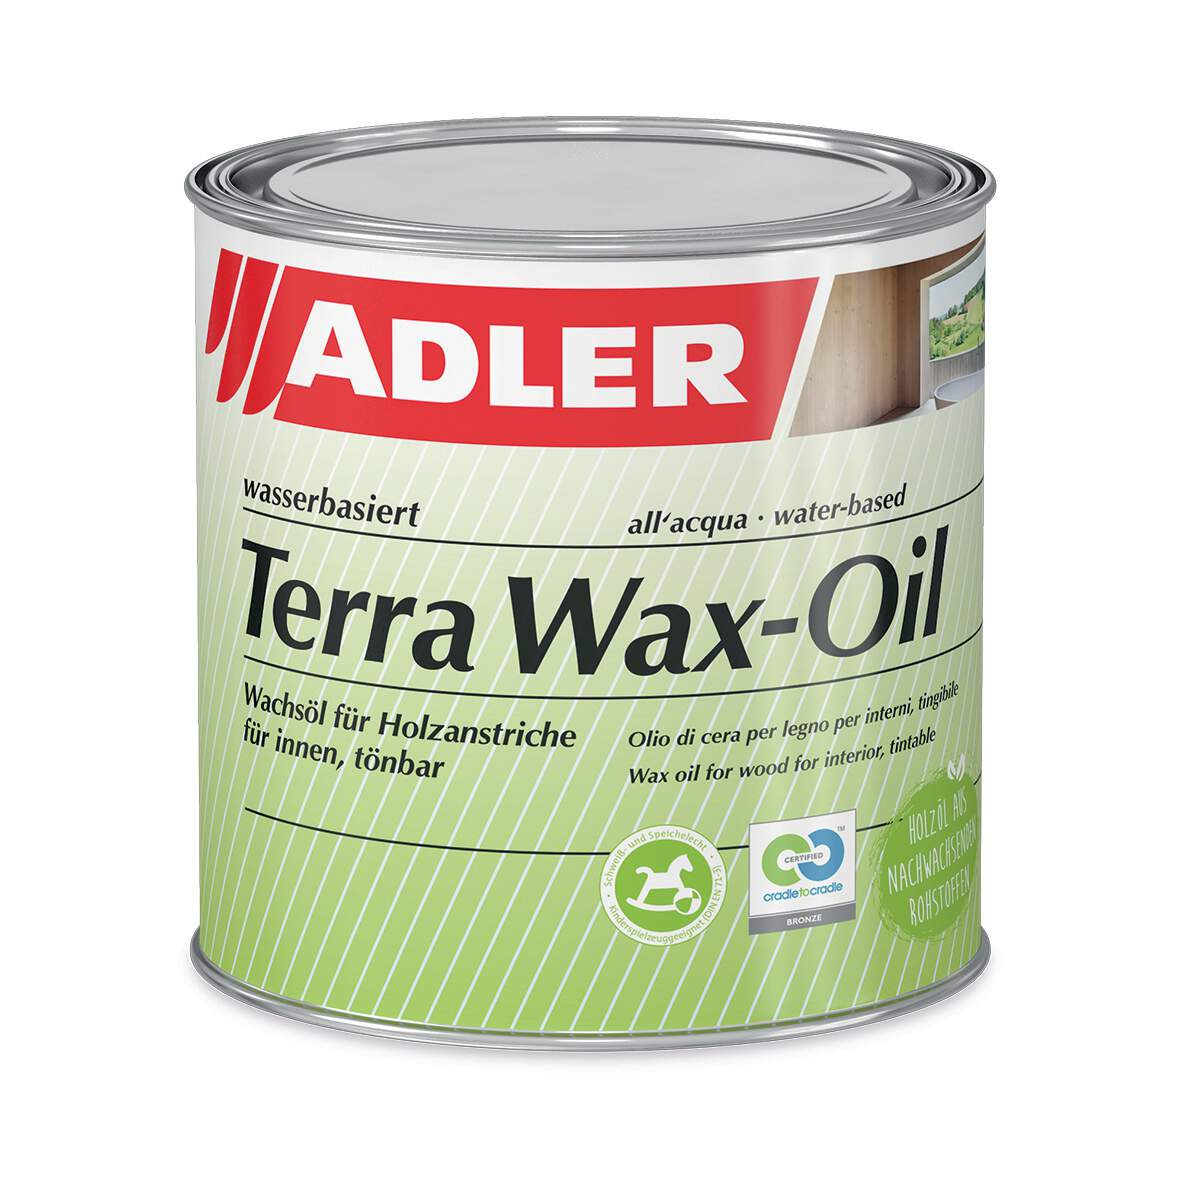 1275252 - Terra Wax-Oil farblos tönbar